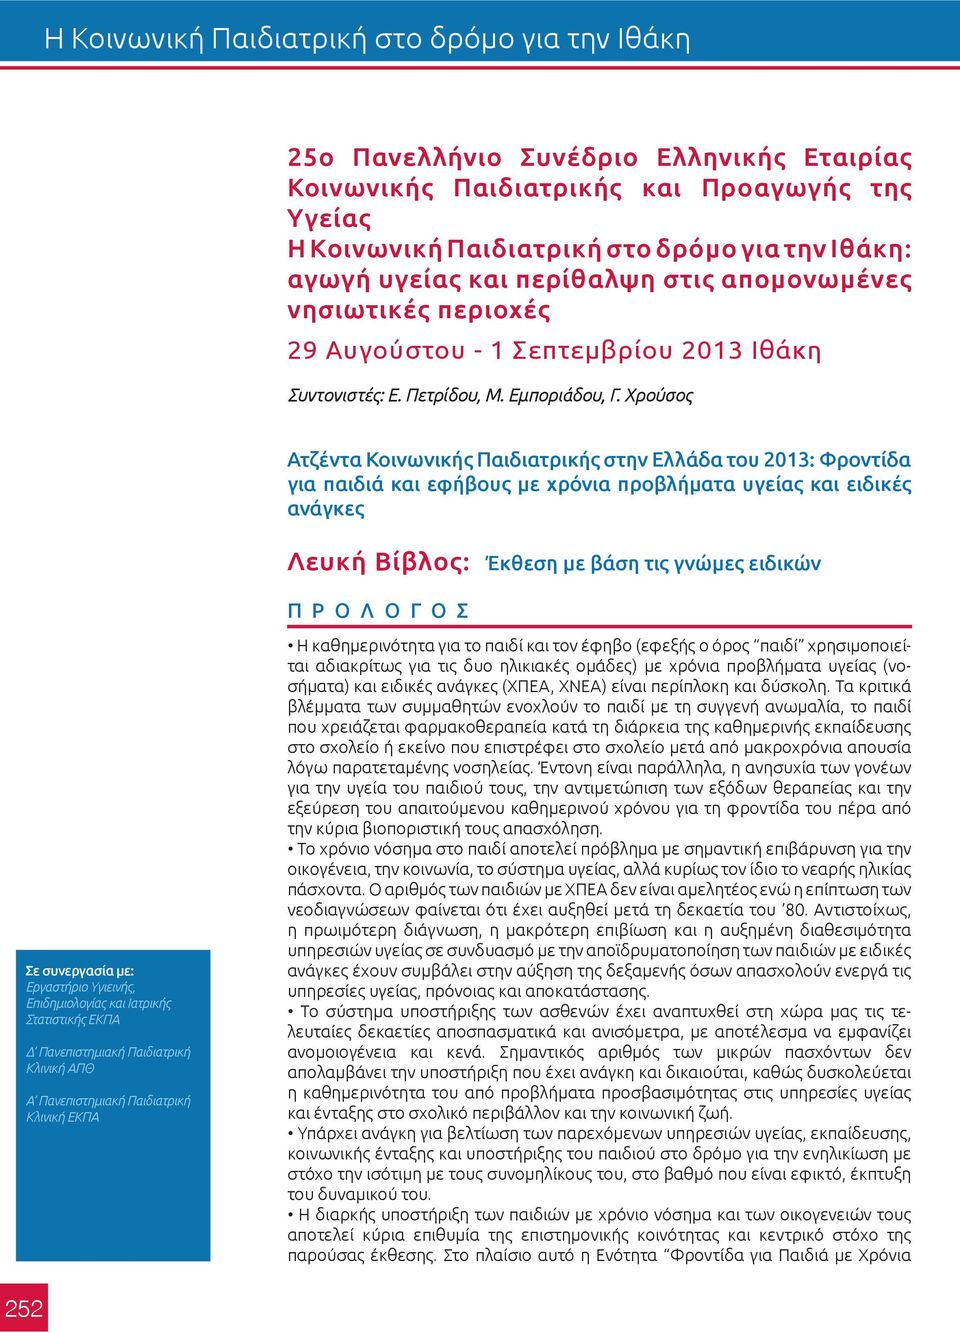 Χρούσος Ατζέντα Κοινωνικής Παιδιατρικής στην Ελλάδα του 2013: Φροντίδα για παιδιά και εφήβους με χρόνια προβλήματα υγείας και ειδικές ανάγκες Λευκή Βίβλος: Έκθεση με βάση τις γνώμες ειδικών Π Ρ Ο Λ Ο